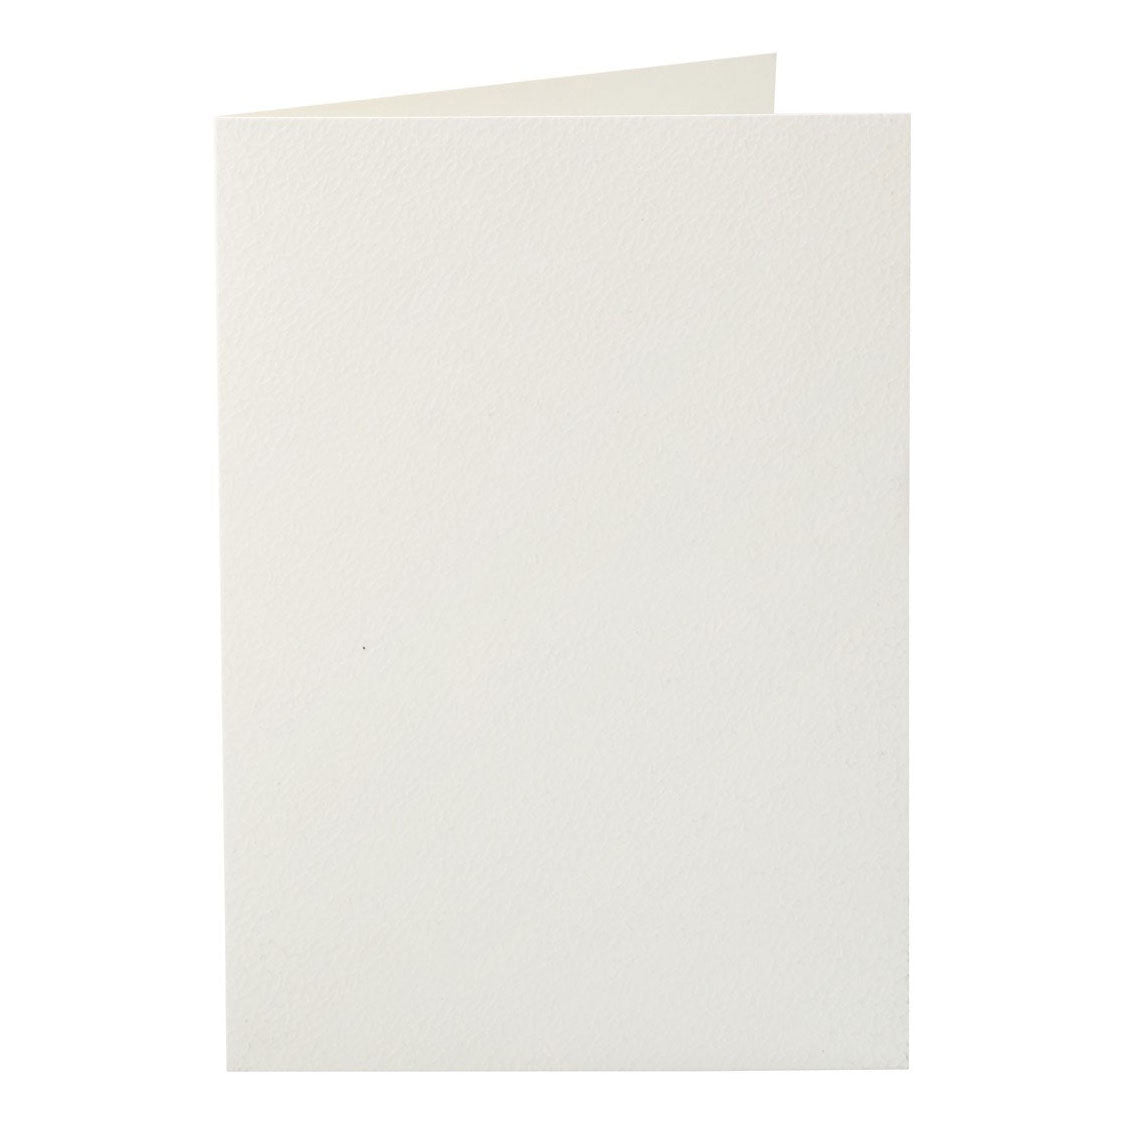 Creativ Tarjetas de Empresa Blanco hueso 10.5x15cm, 10pcs.